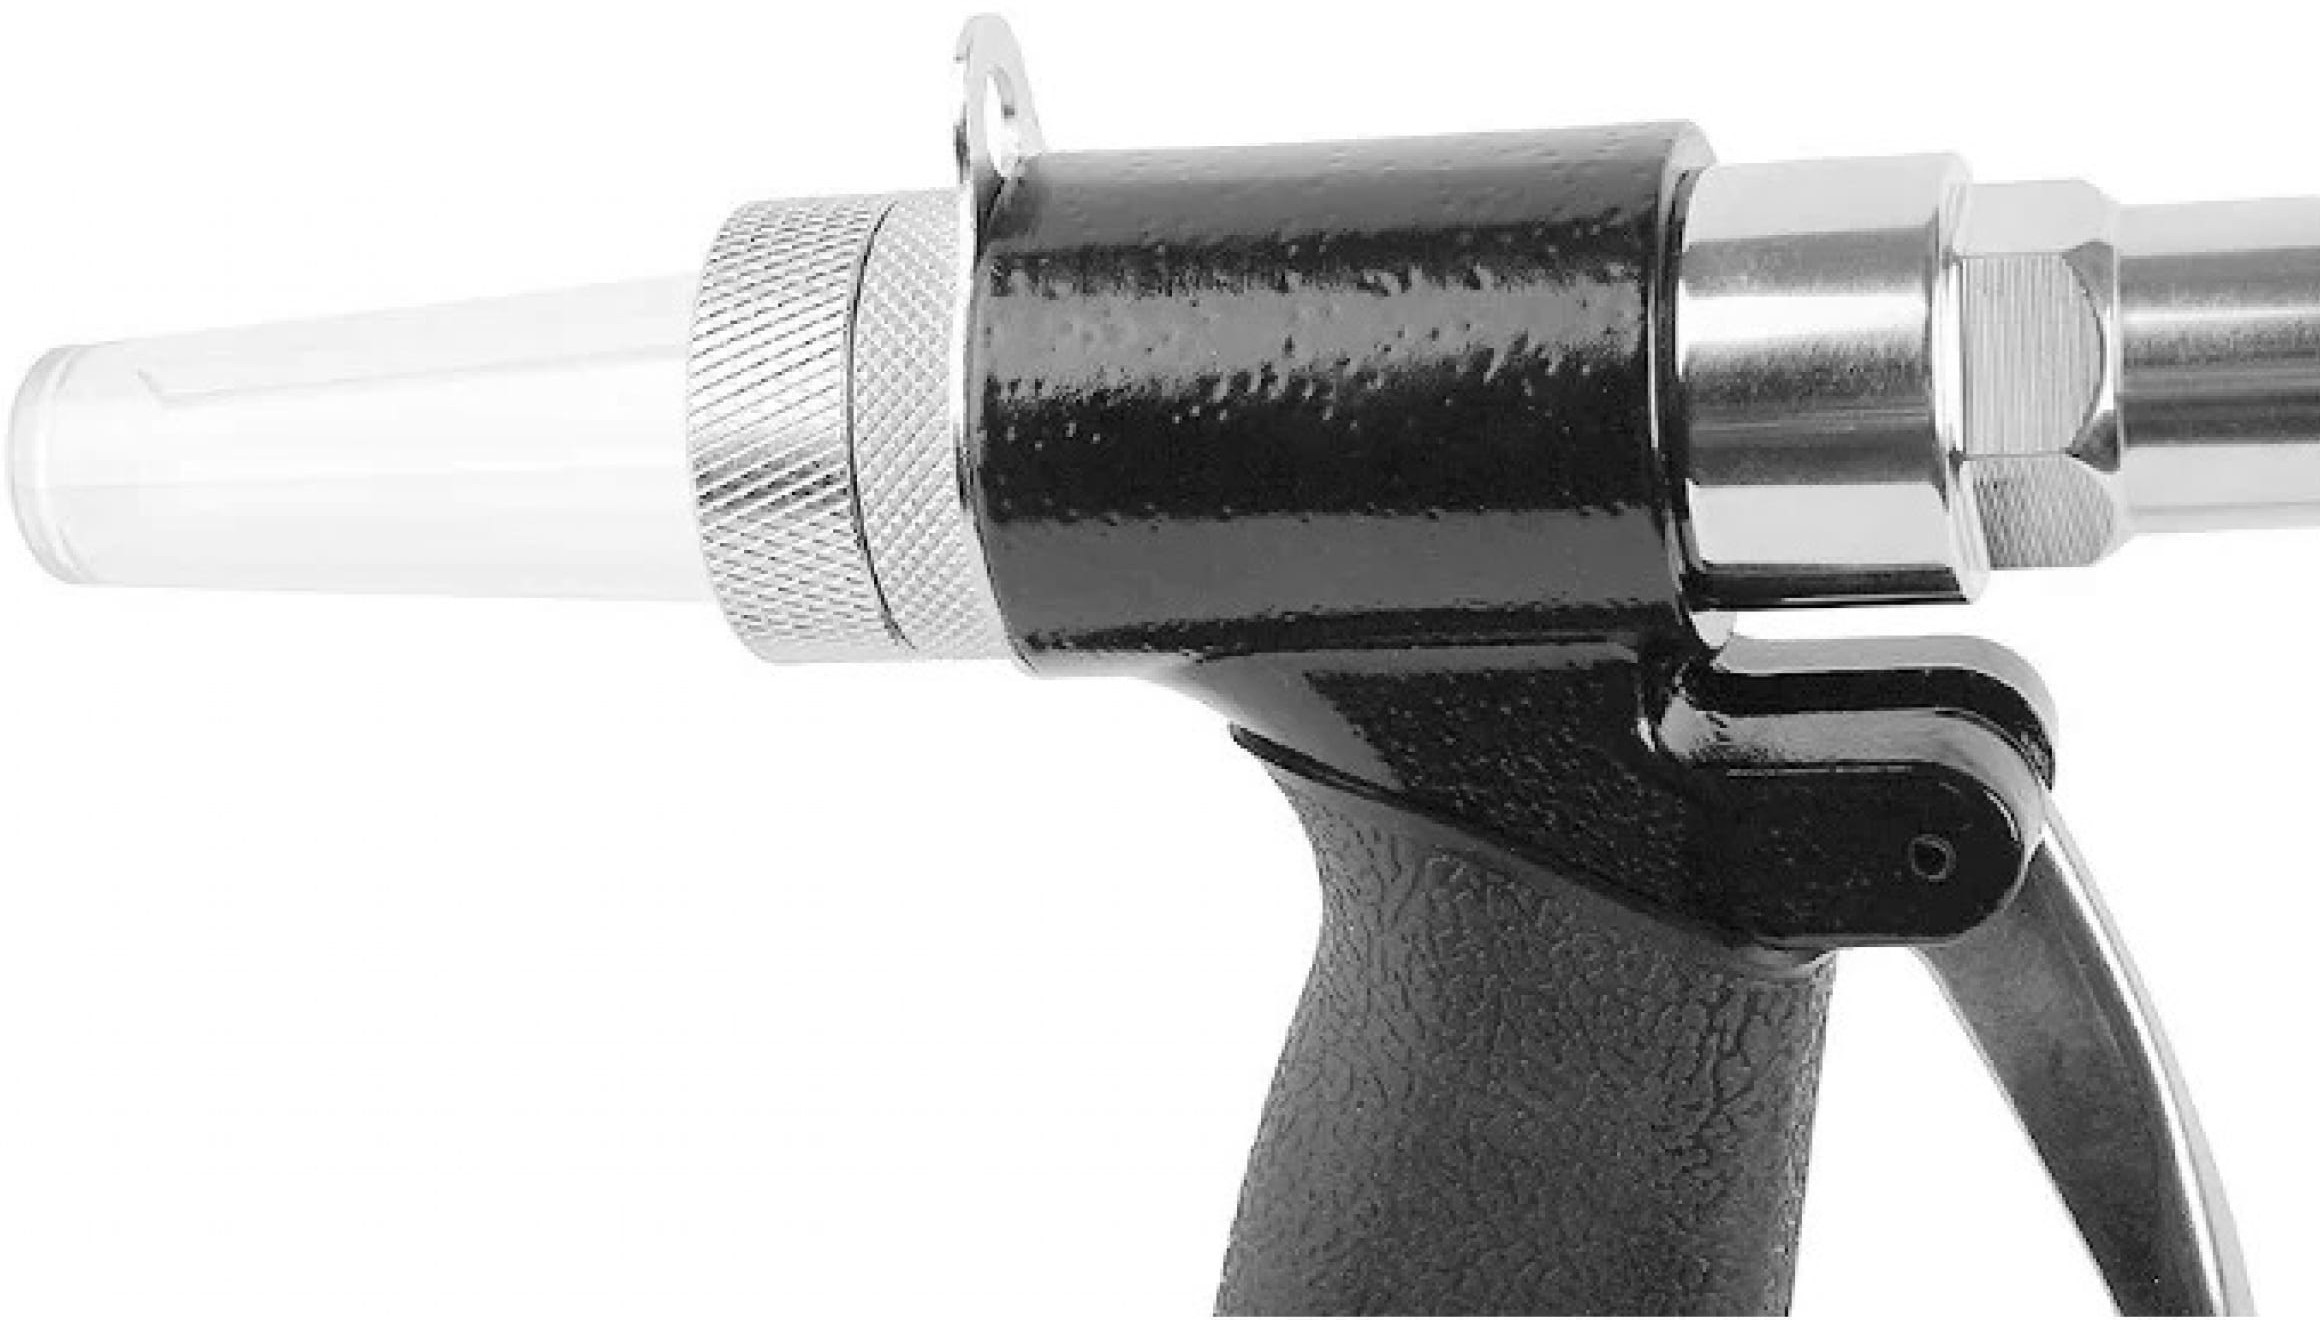 Заклепочник пневматический для вытяжных заклепок  MESSER AHR-101, 2.4 - 4.8 мм - фото